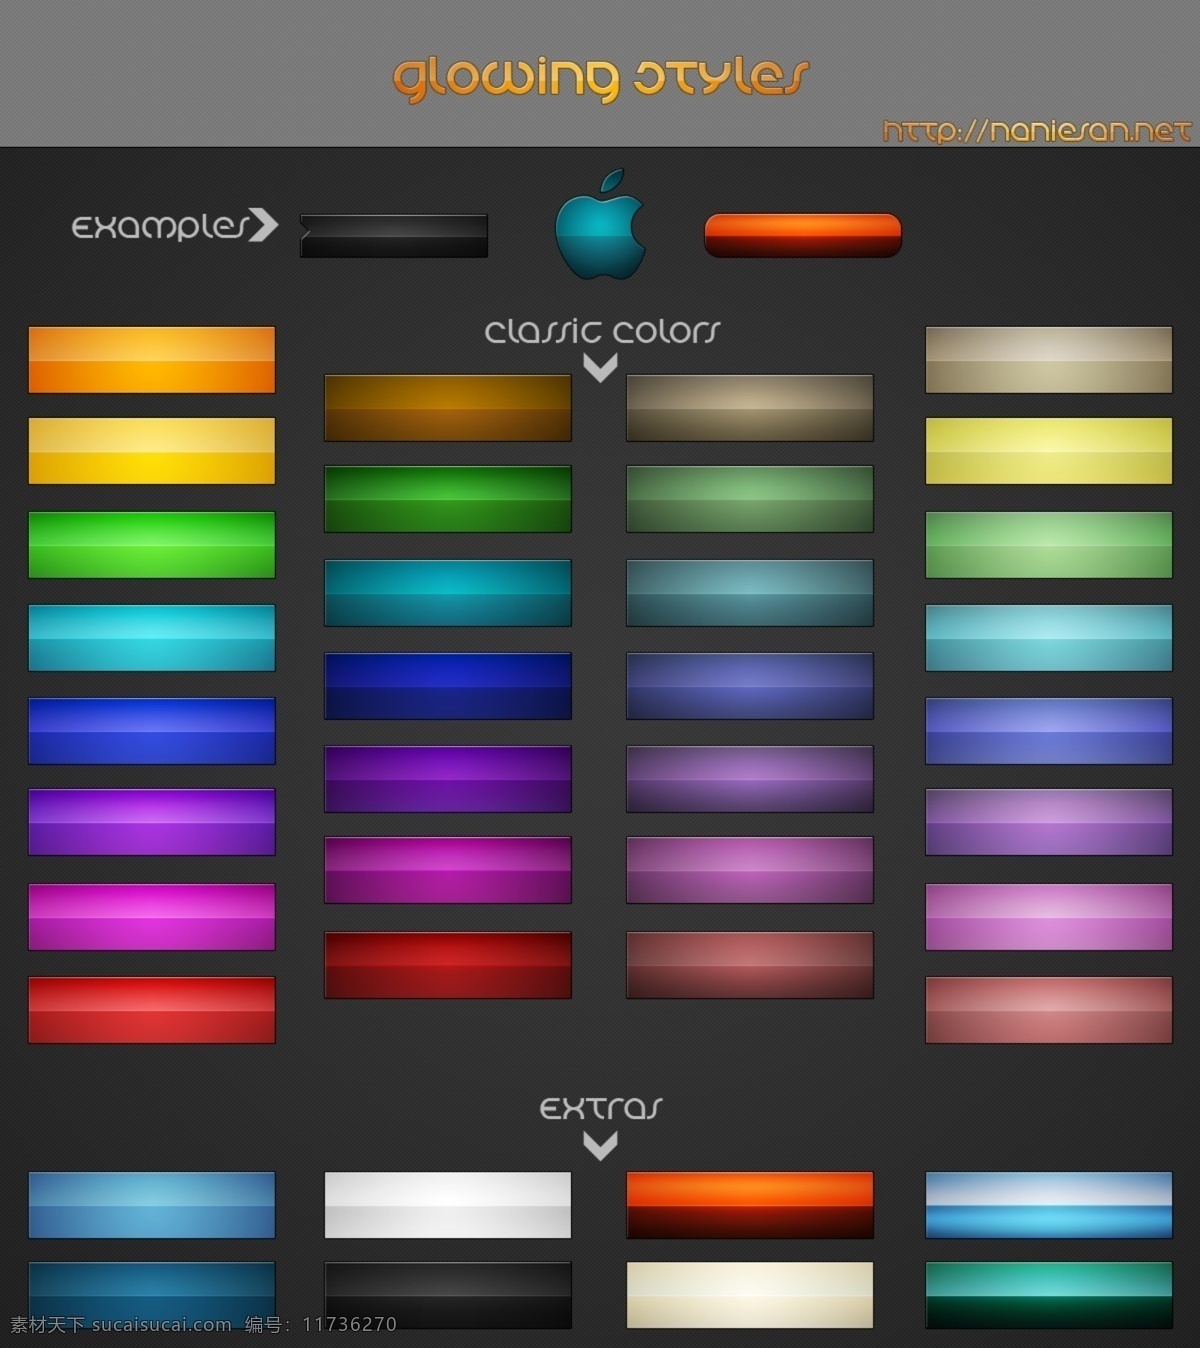 ui 按钮 组 时尚 色彩 鲜艳 web 包 创意 高分辨率 接口 免费 清洁 纹理 时尚的 现代的 独特的 原始的 质量 新鲜的 设计新的 hd 元素 用户界面 ui元素 详细的 颜色 发光的 集 丰富多彩的 矢量图